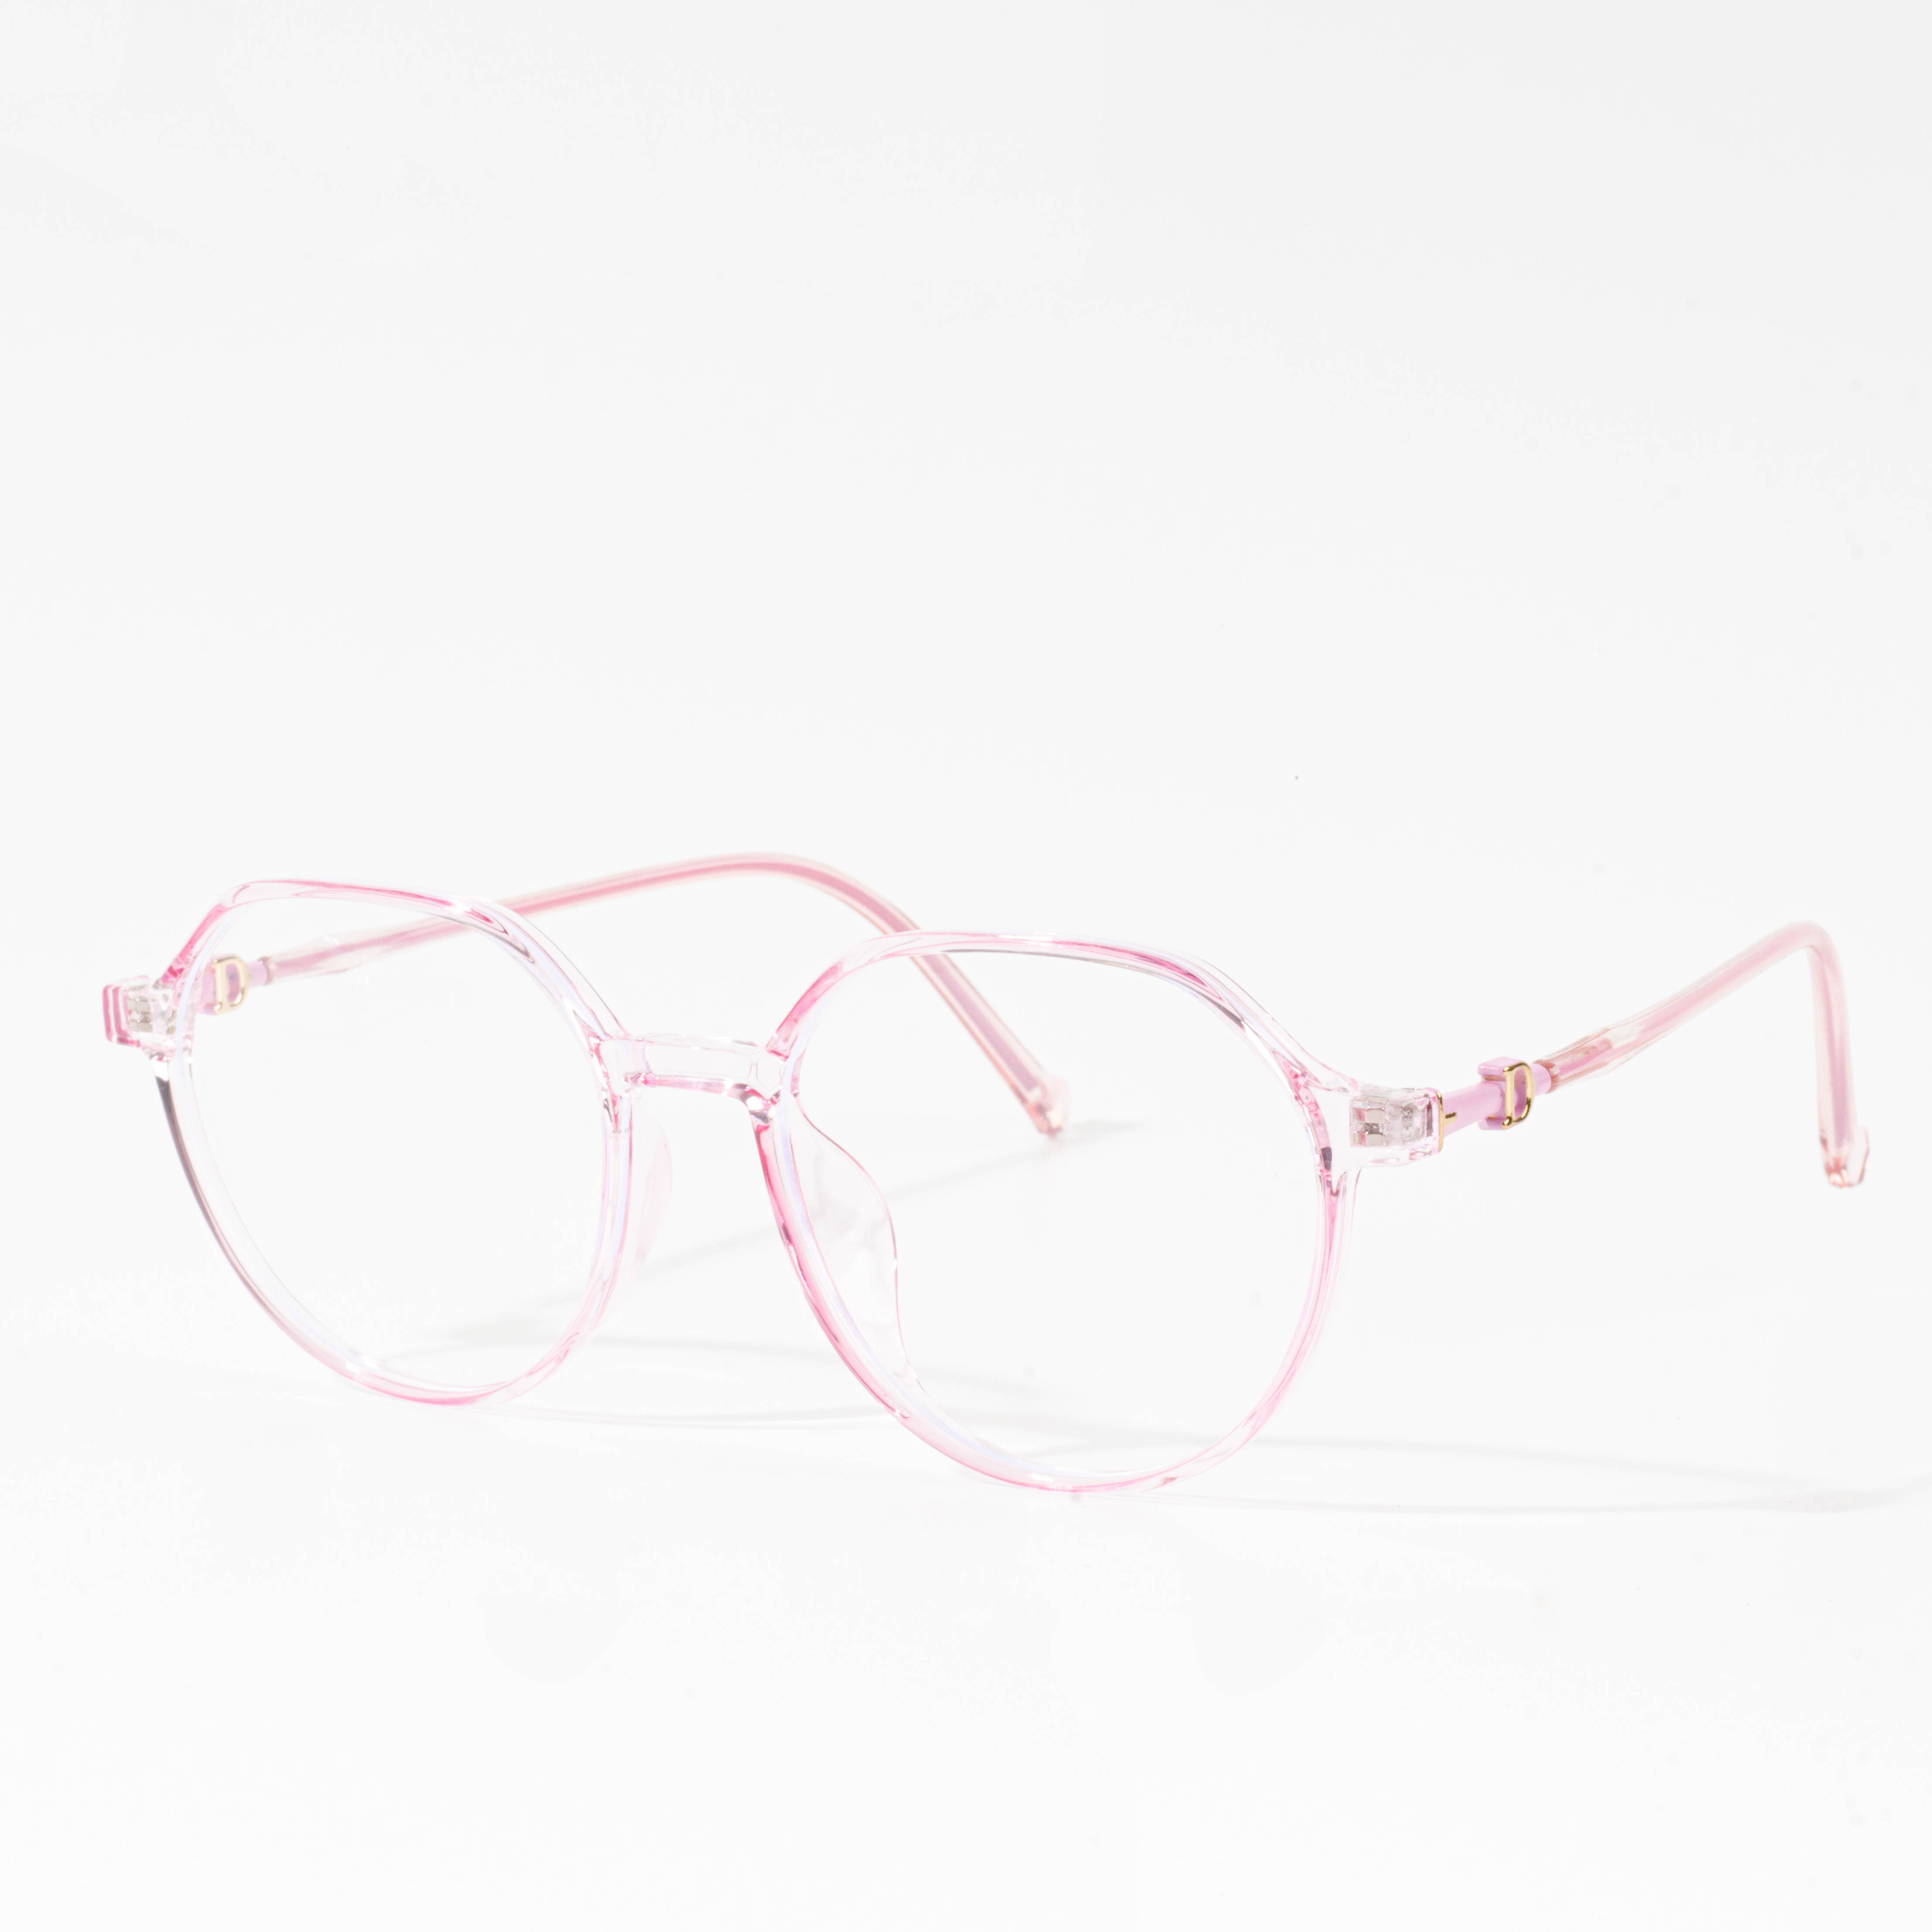 monture per occhiali populari da donnaMG_5085